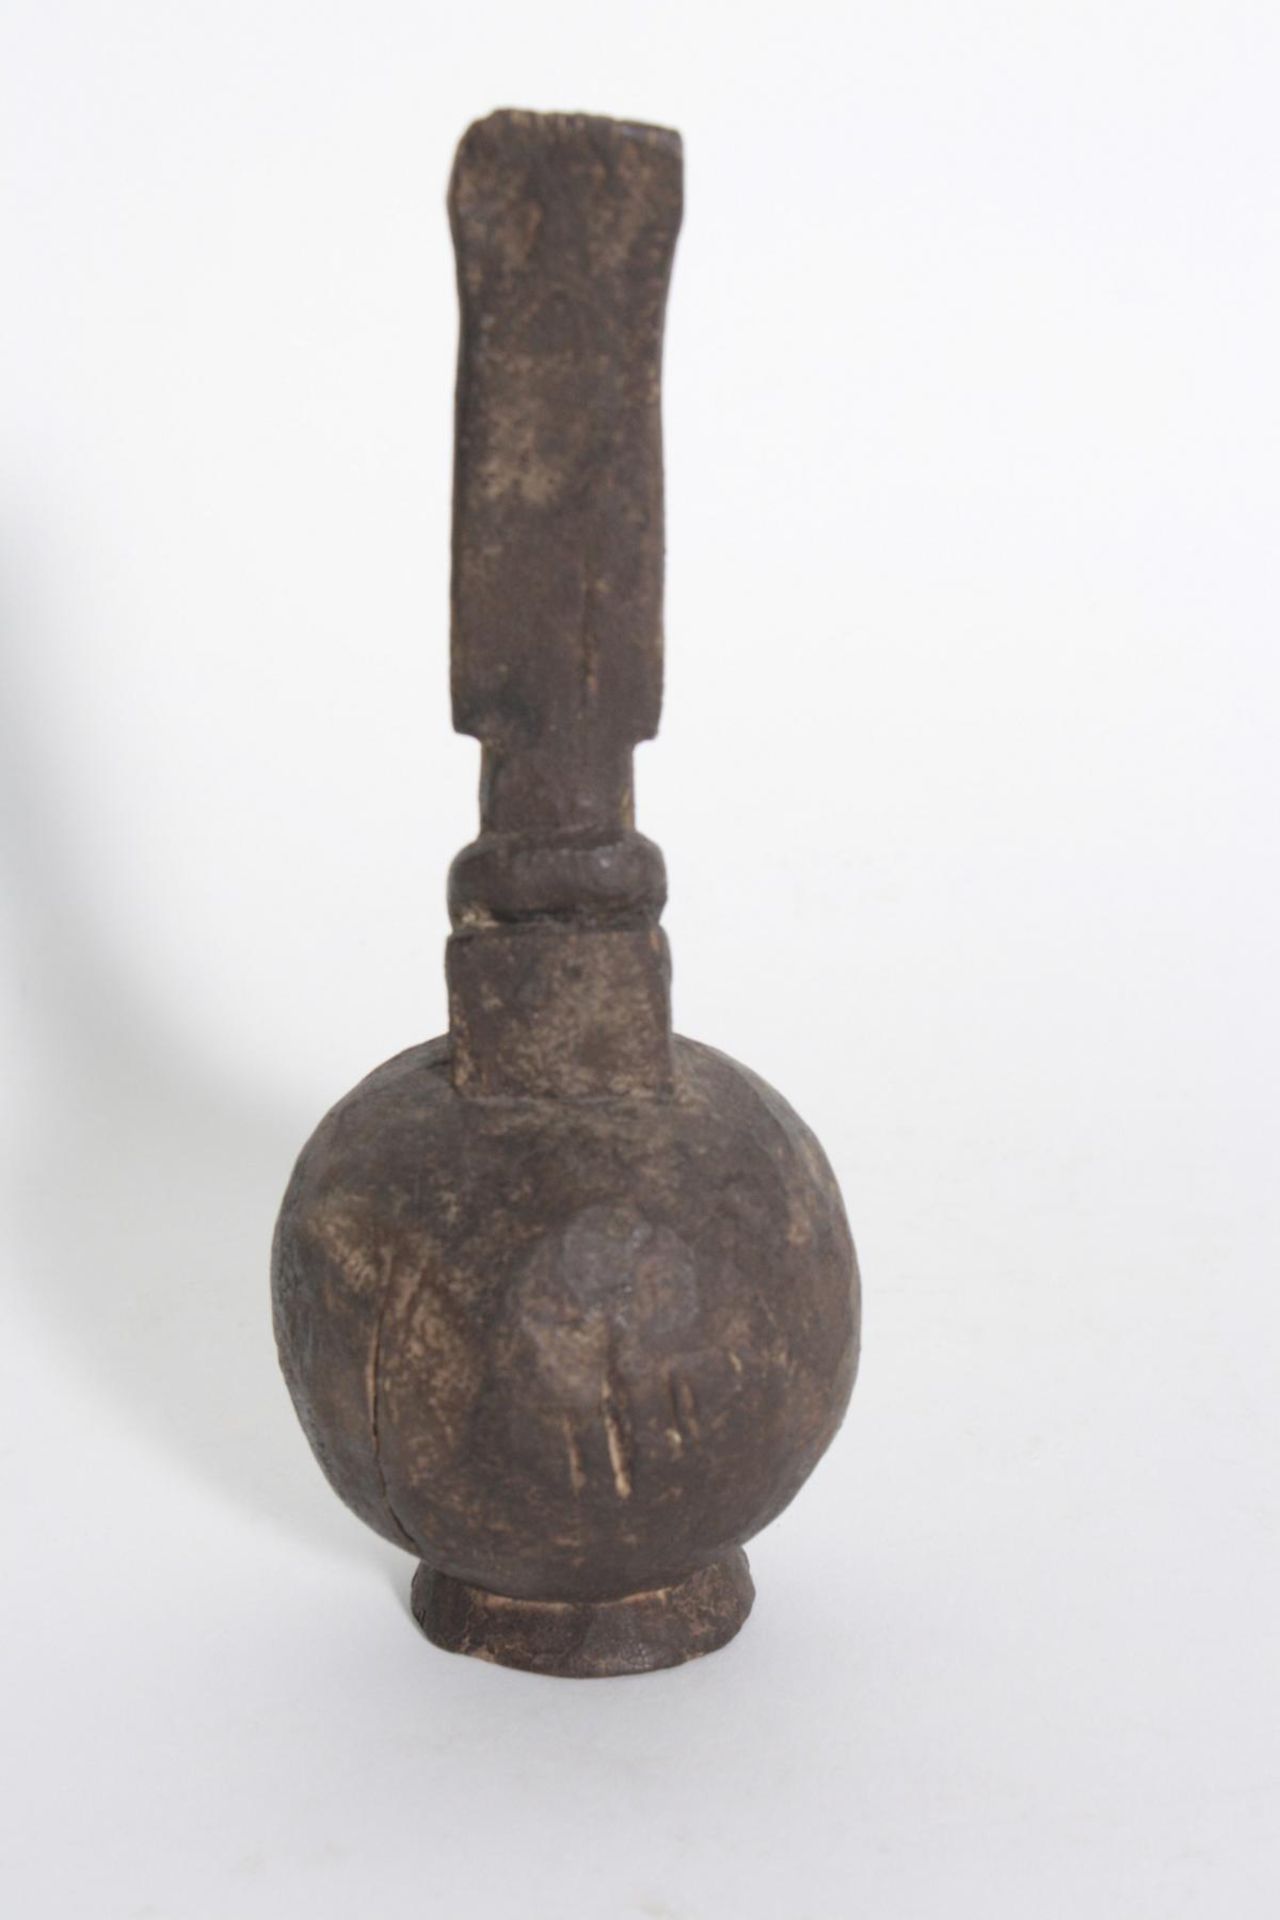 Kleines Ölgefäß, Dogon, Mali, 1. Hälfte 20. Jh.Holz geschnitzt, starke dunkelbraune Krustenpatina, - Bild 2 aus 3